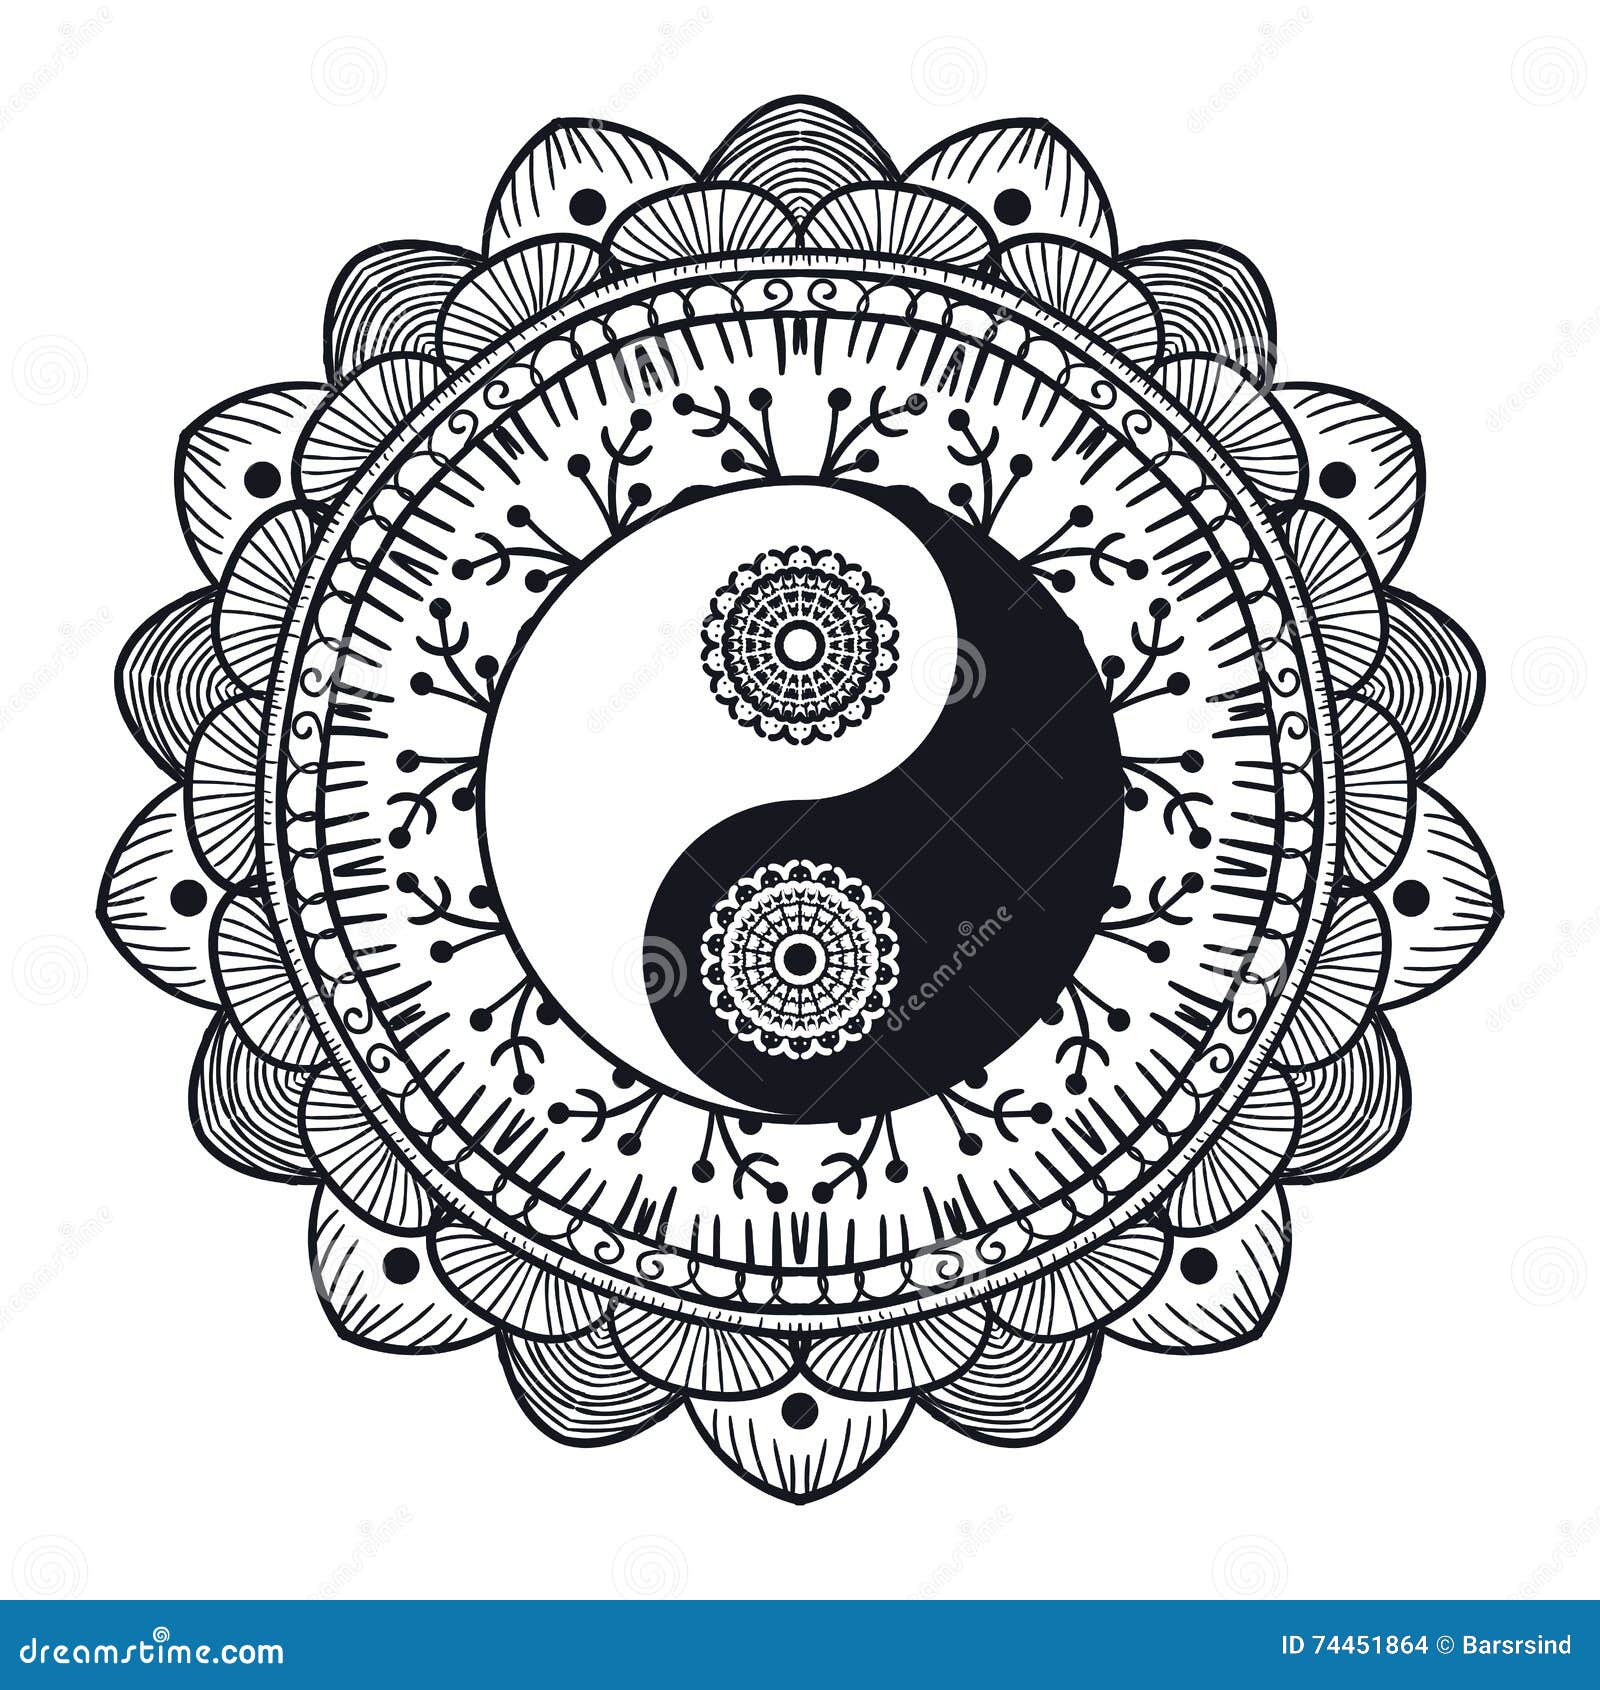 ying yang mandala coloring pages - photo #44